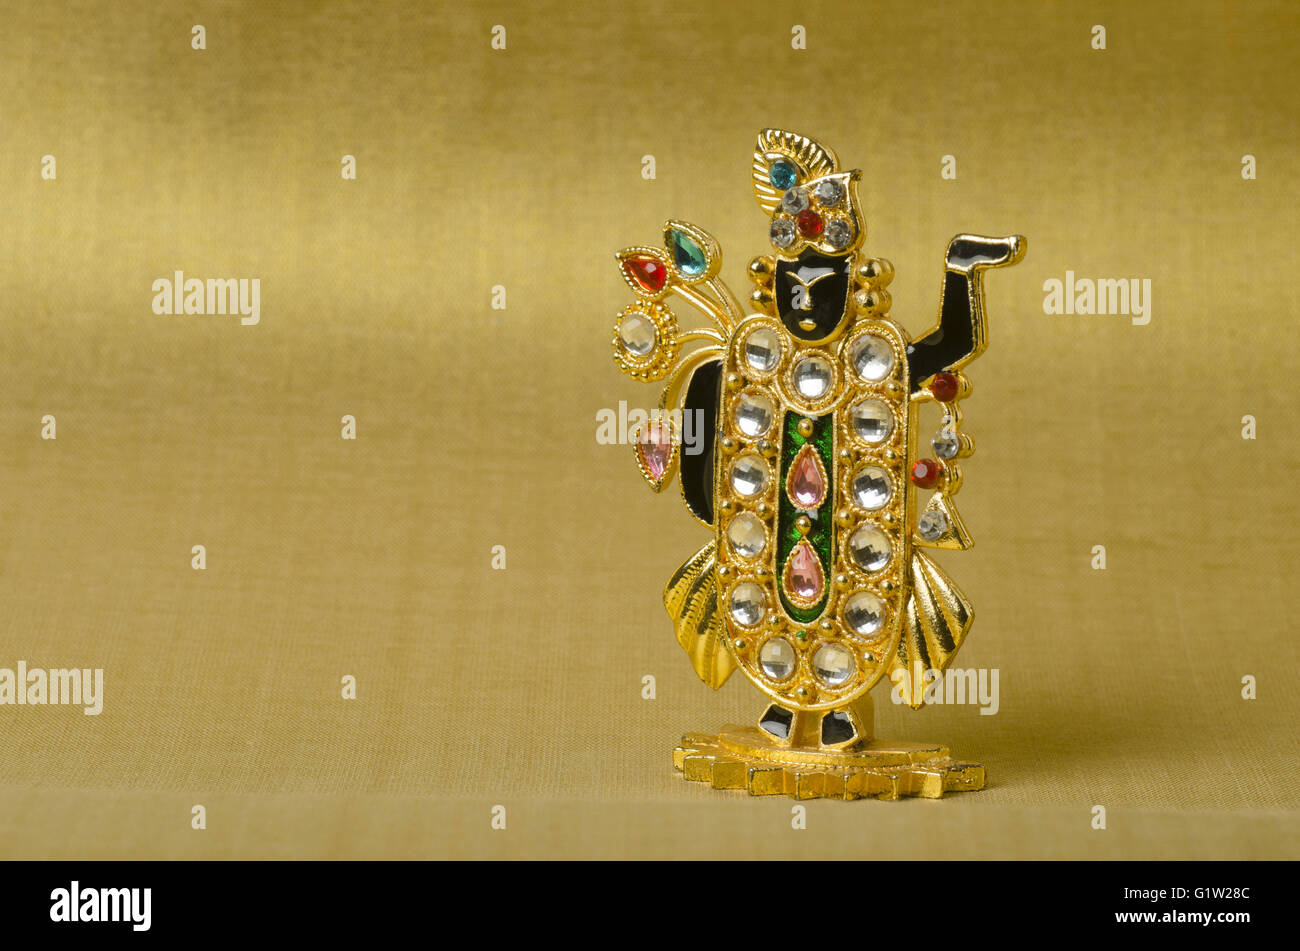 Idolo di piccole dimensioni (miniatura) di tirupati sullo sfondo dorato, studio shot di Pune, Maharashtra, India Foto Stock